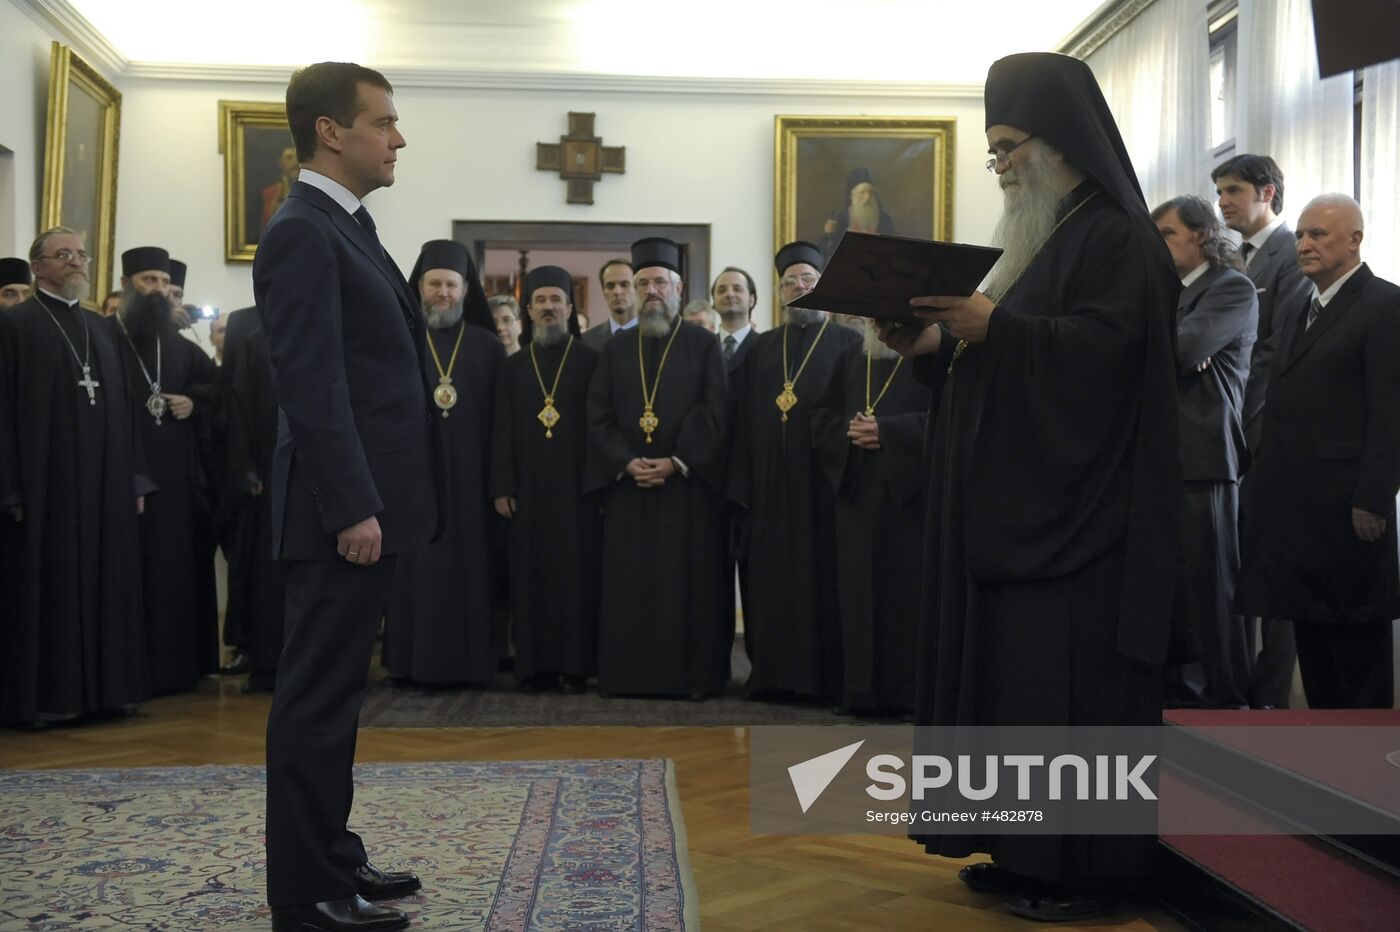 Dmitry Medvedev awarded St. Sava Order